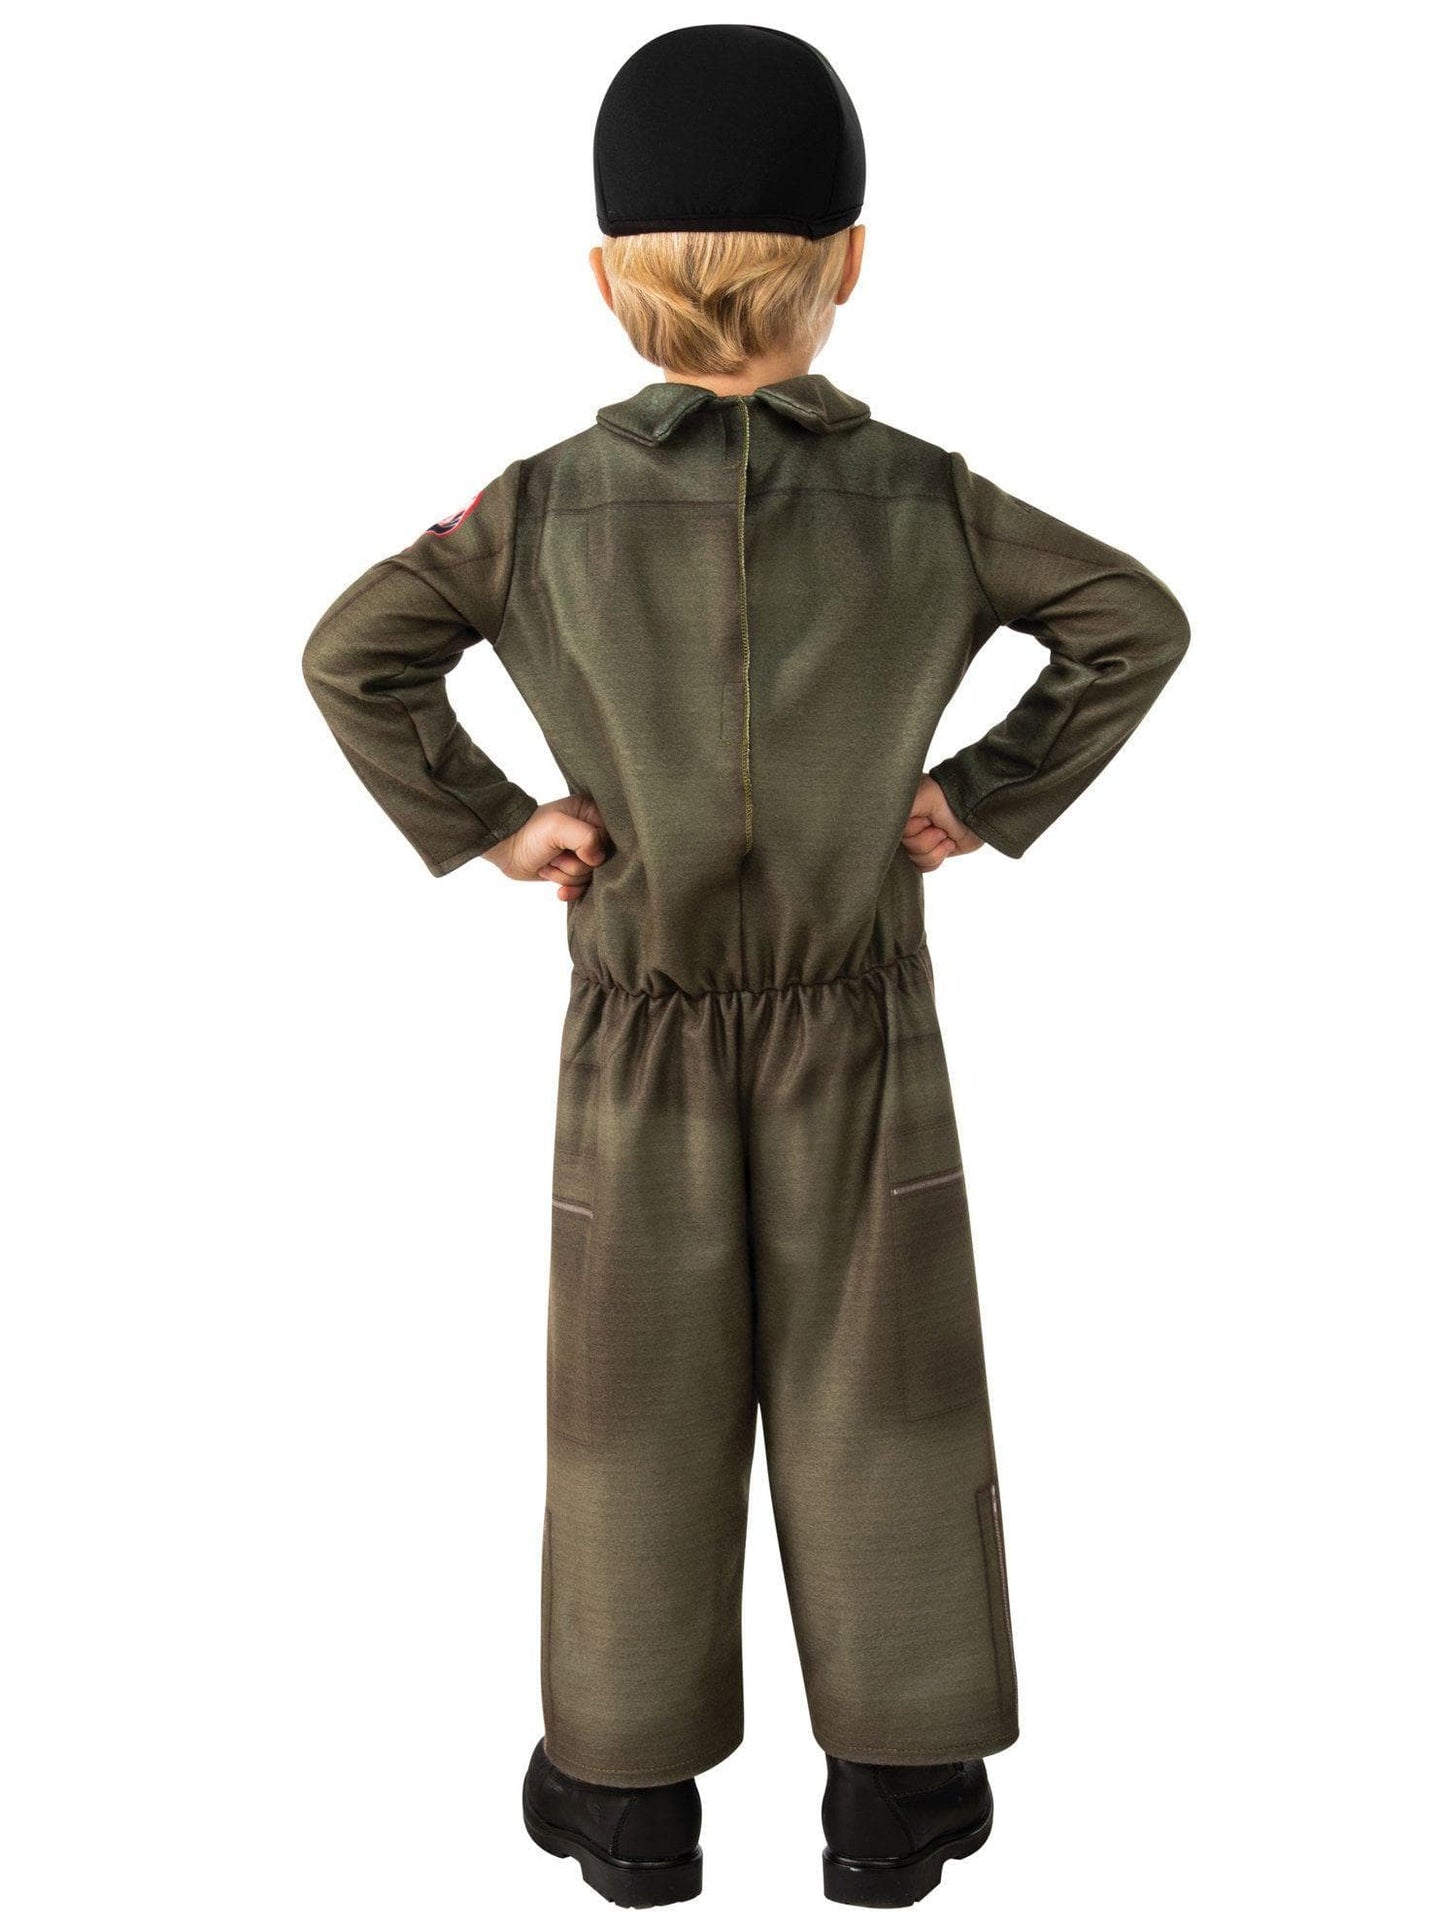 Top Gun Maverick Unisexe Costume pour enfant